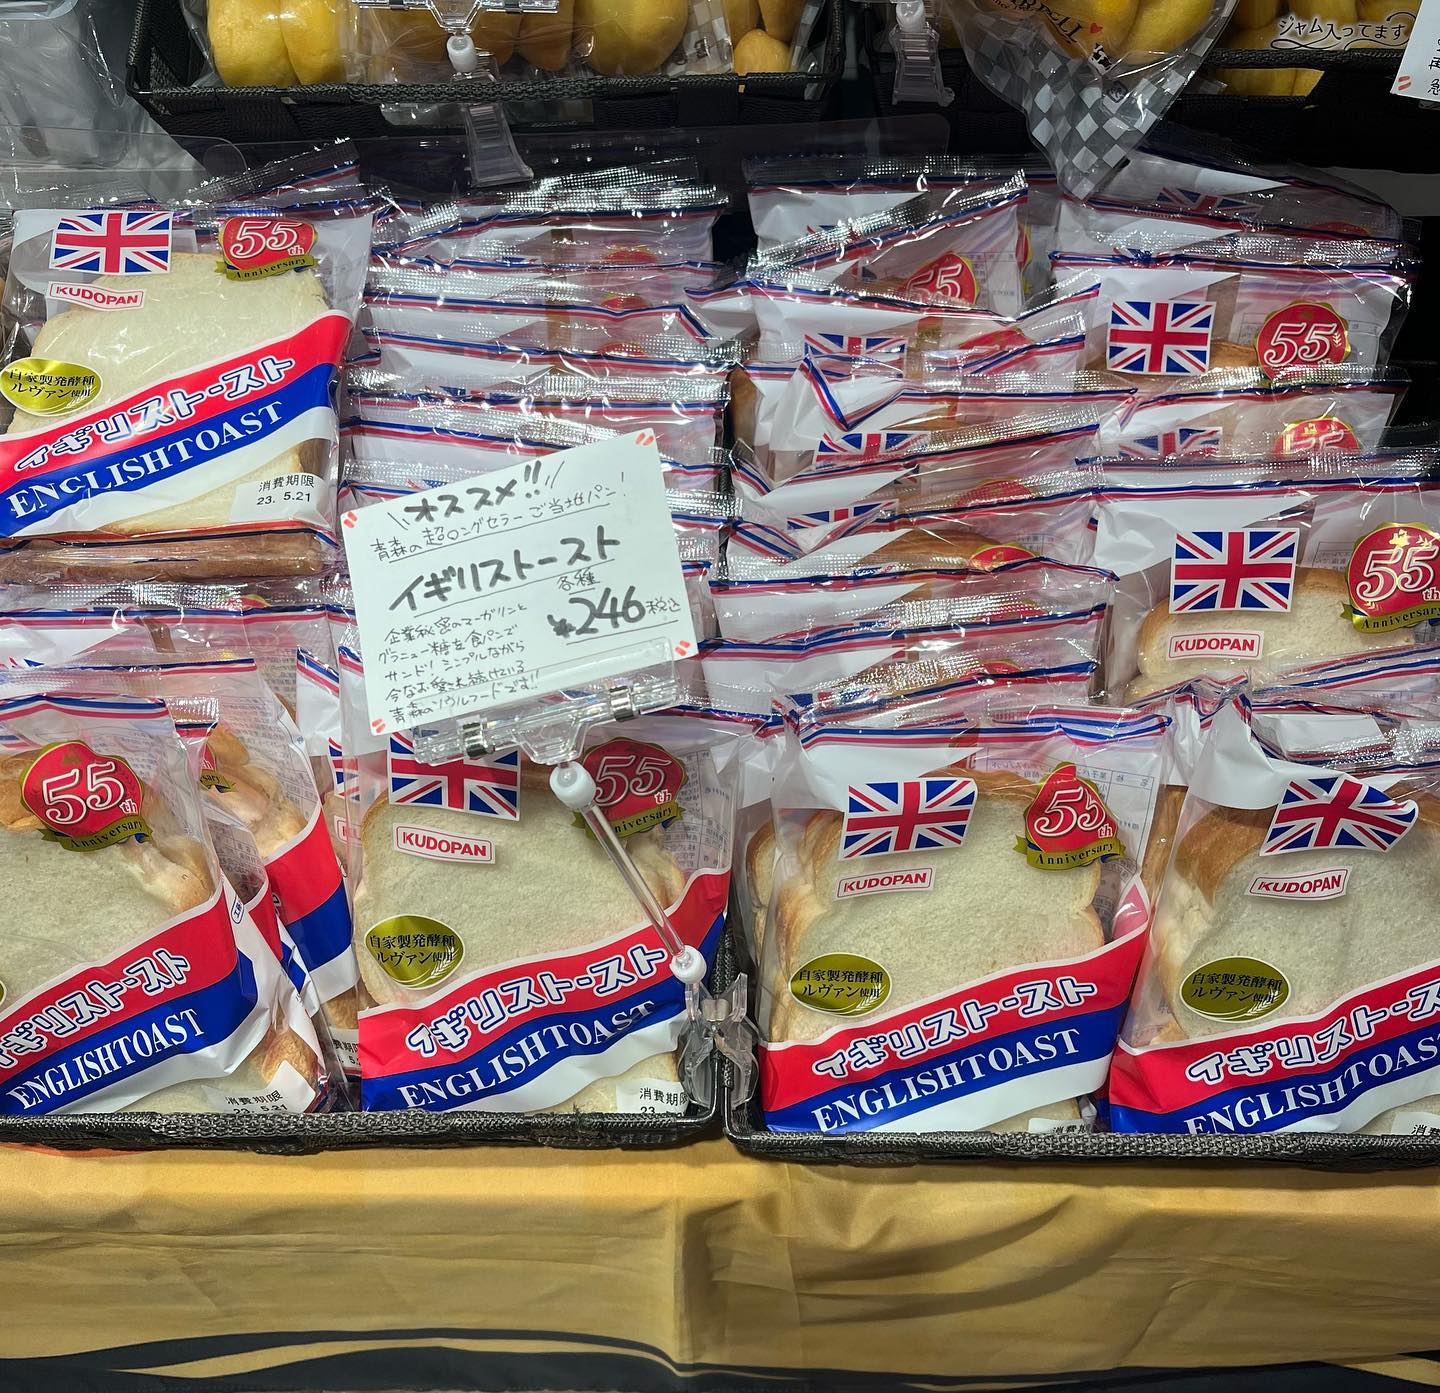 先日レイクタウンにお出かけしたら私の地元青森で大人気のイギリストーストが売っていました！